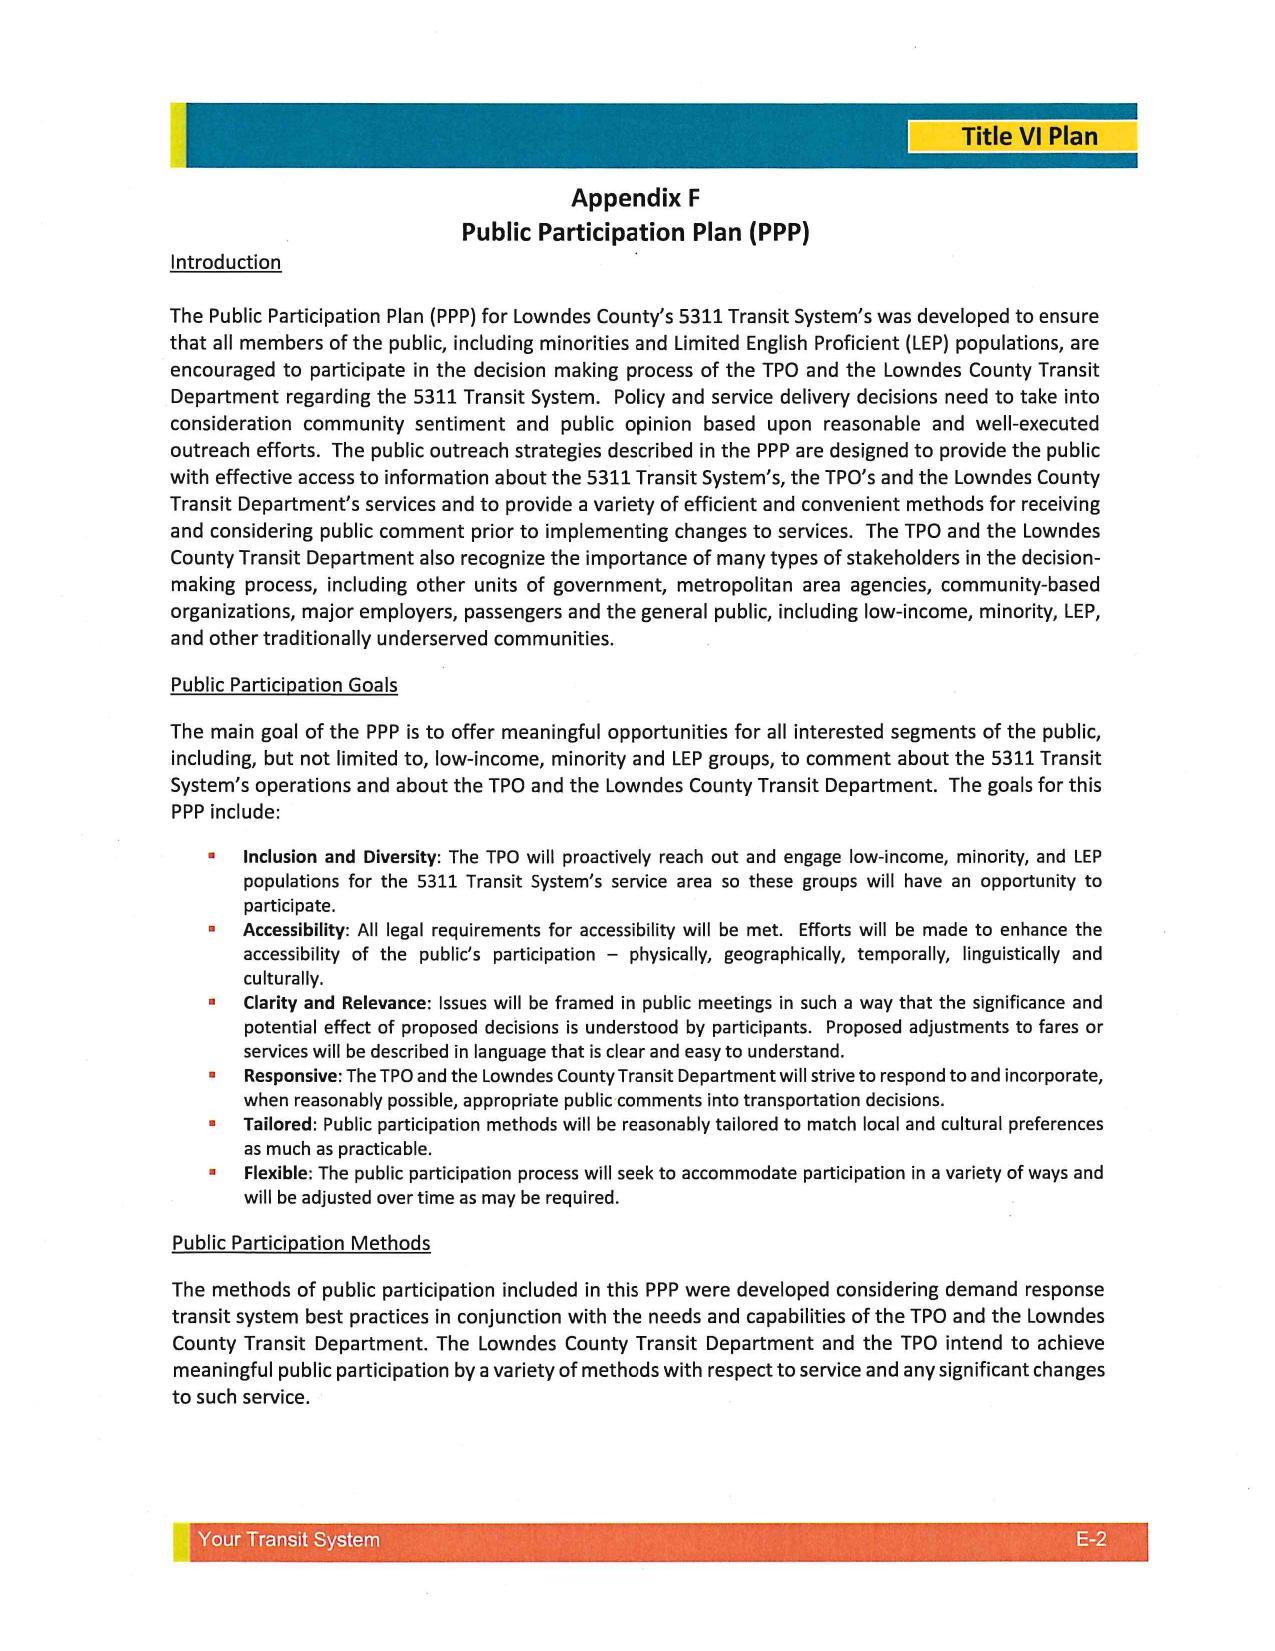 Public Participation Plan (PPP)